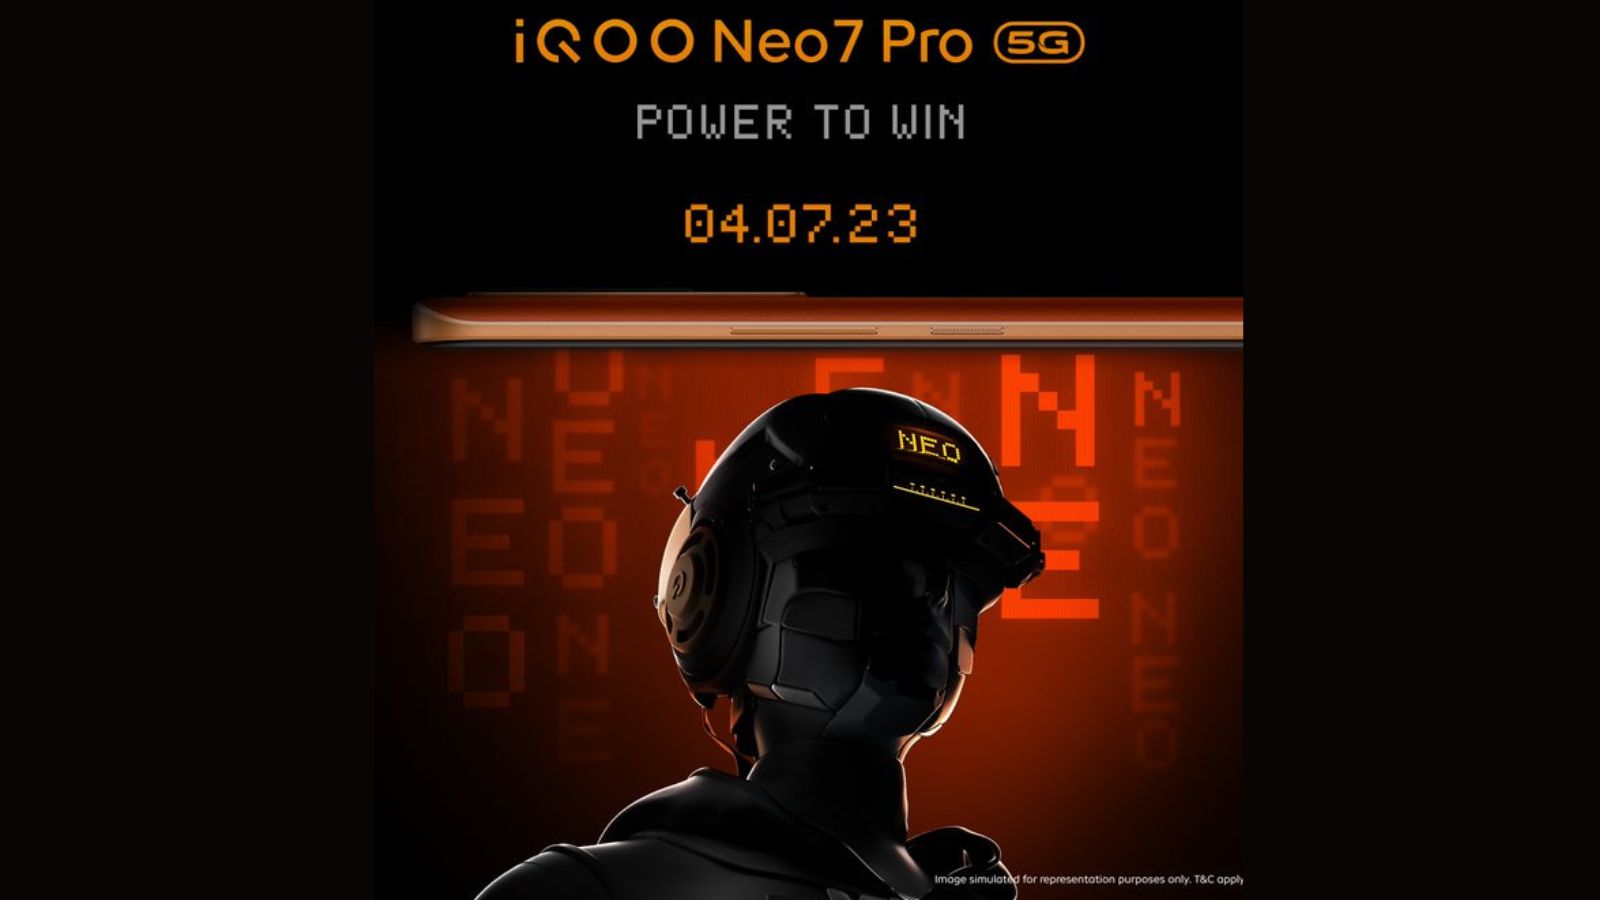 Официально: запуск iQOO Neo 7 Pro 5G в Индии состоится 4 июля.